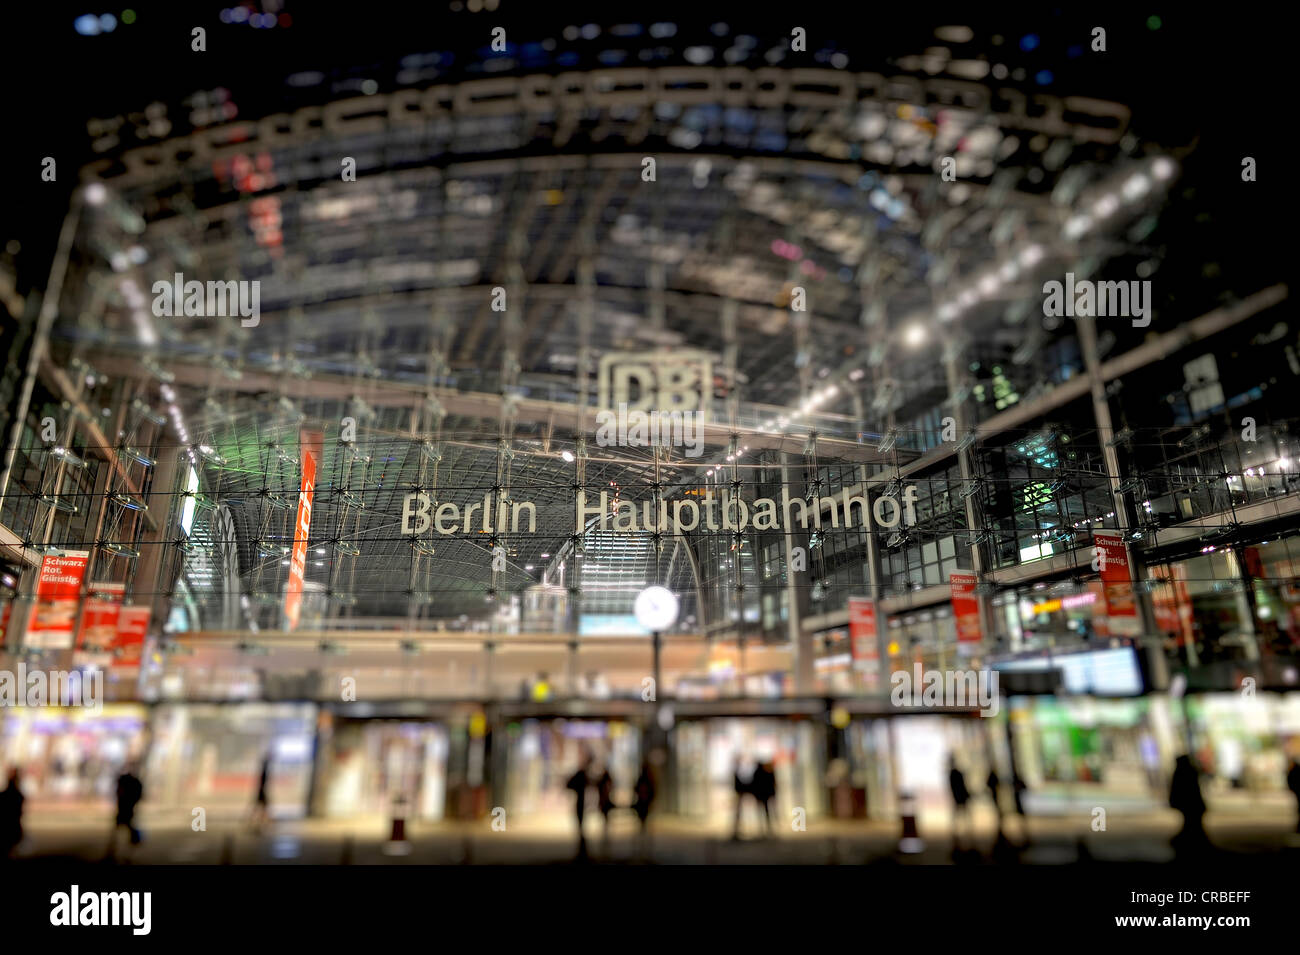 Photo de nuit, la gare centrale de Berlin, miniature, trucage, smallgantics Tilt-shift, l'effet de Mitte, Berlin, PublicGround Banque D'Images